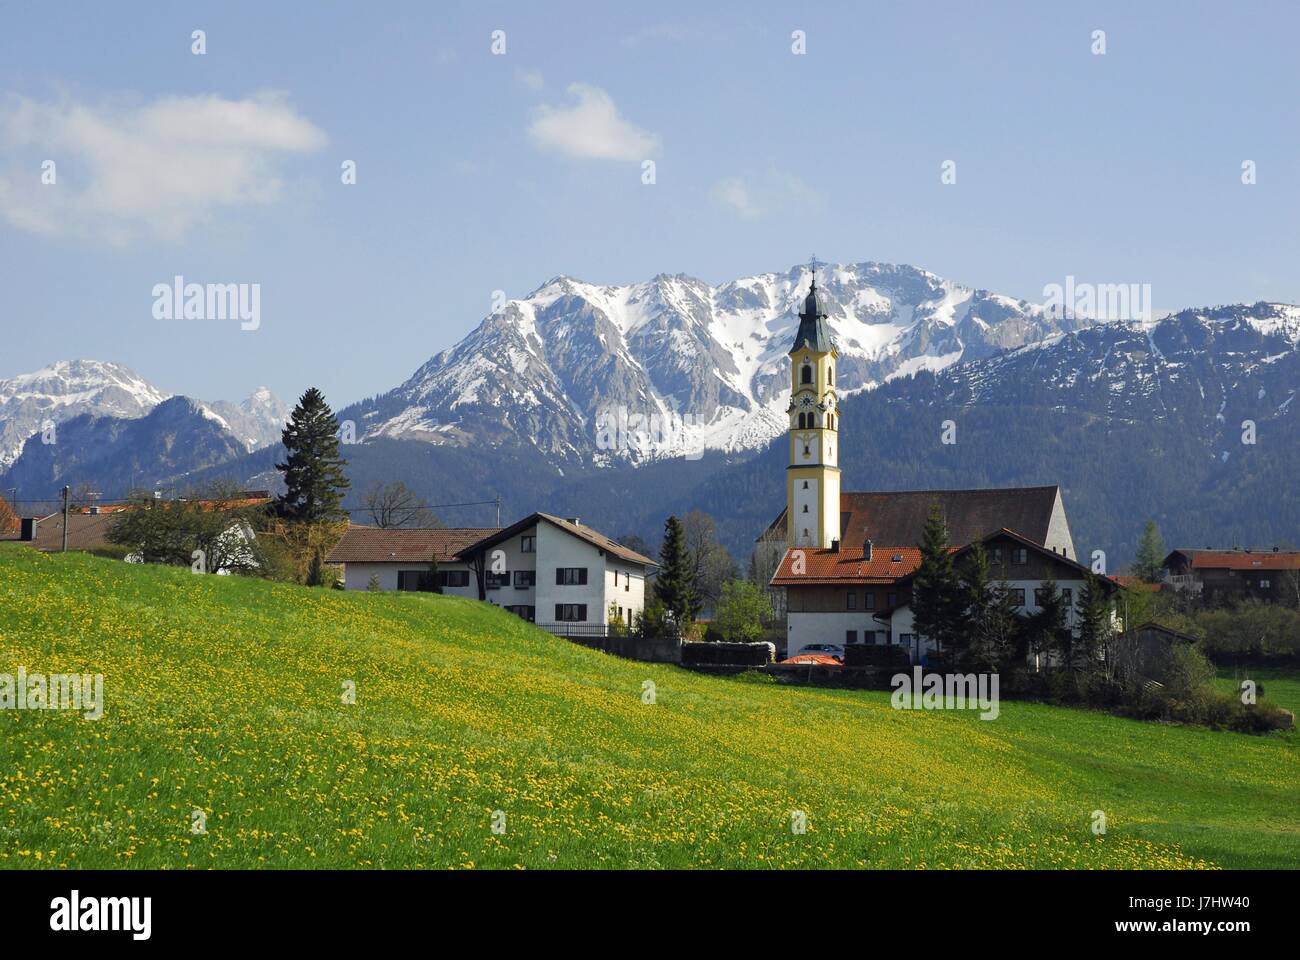 L'église maisons bavière printemps allgu paysages de montagne neige nature campagne Banque D'Images